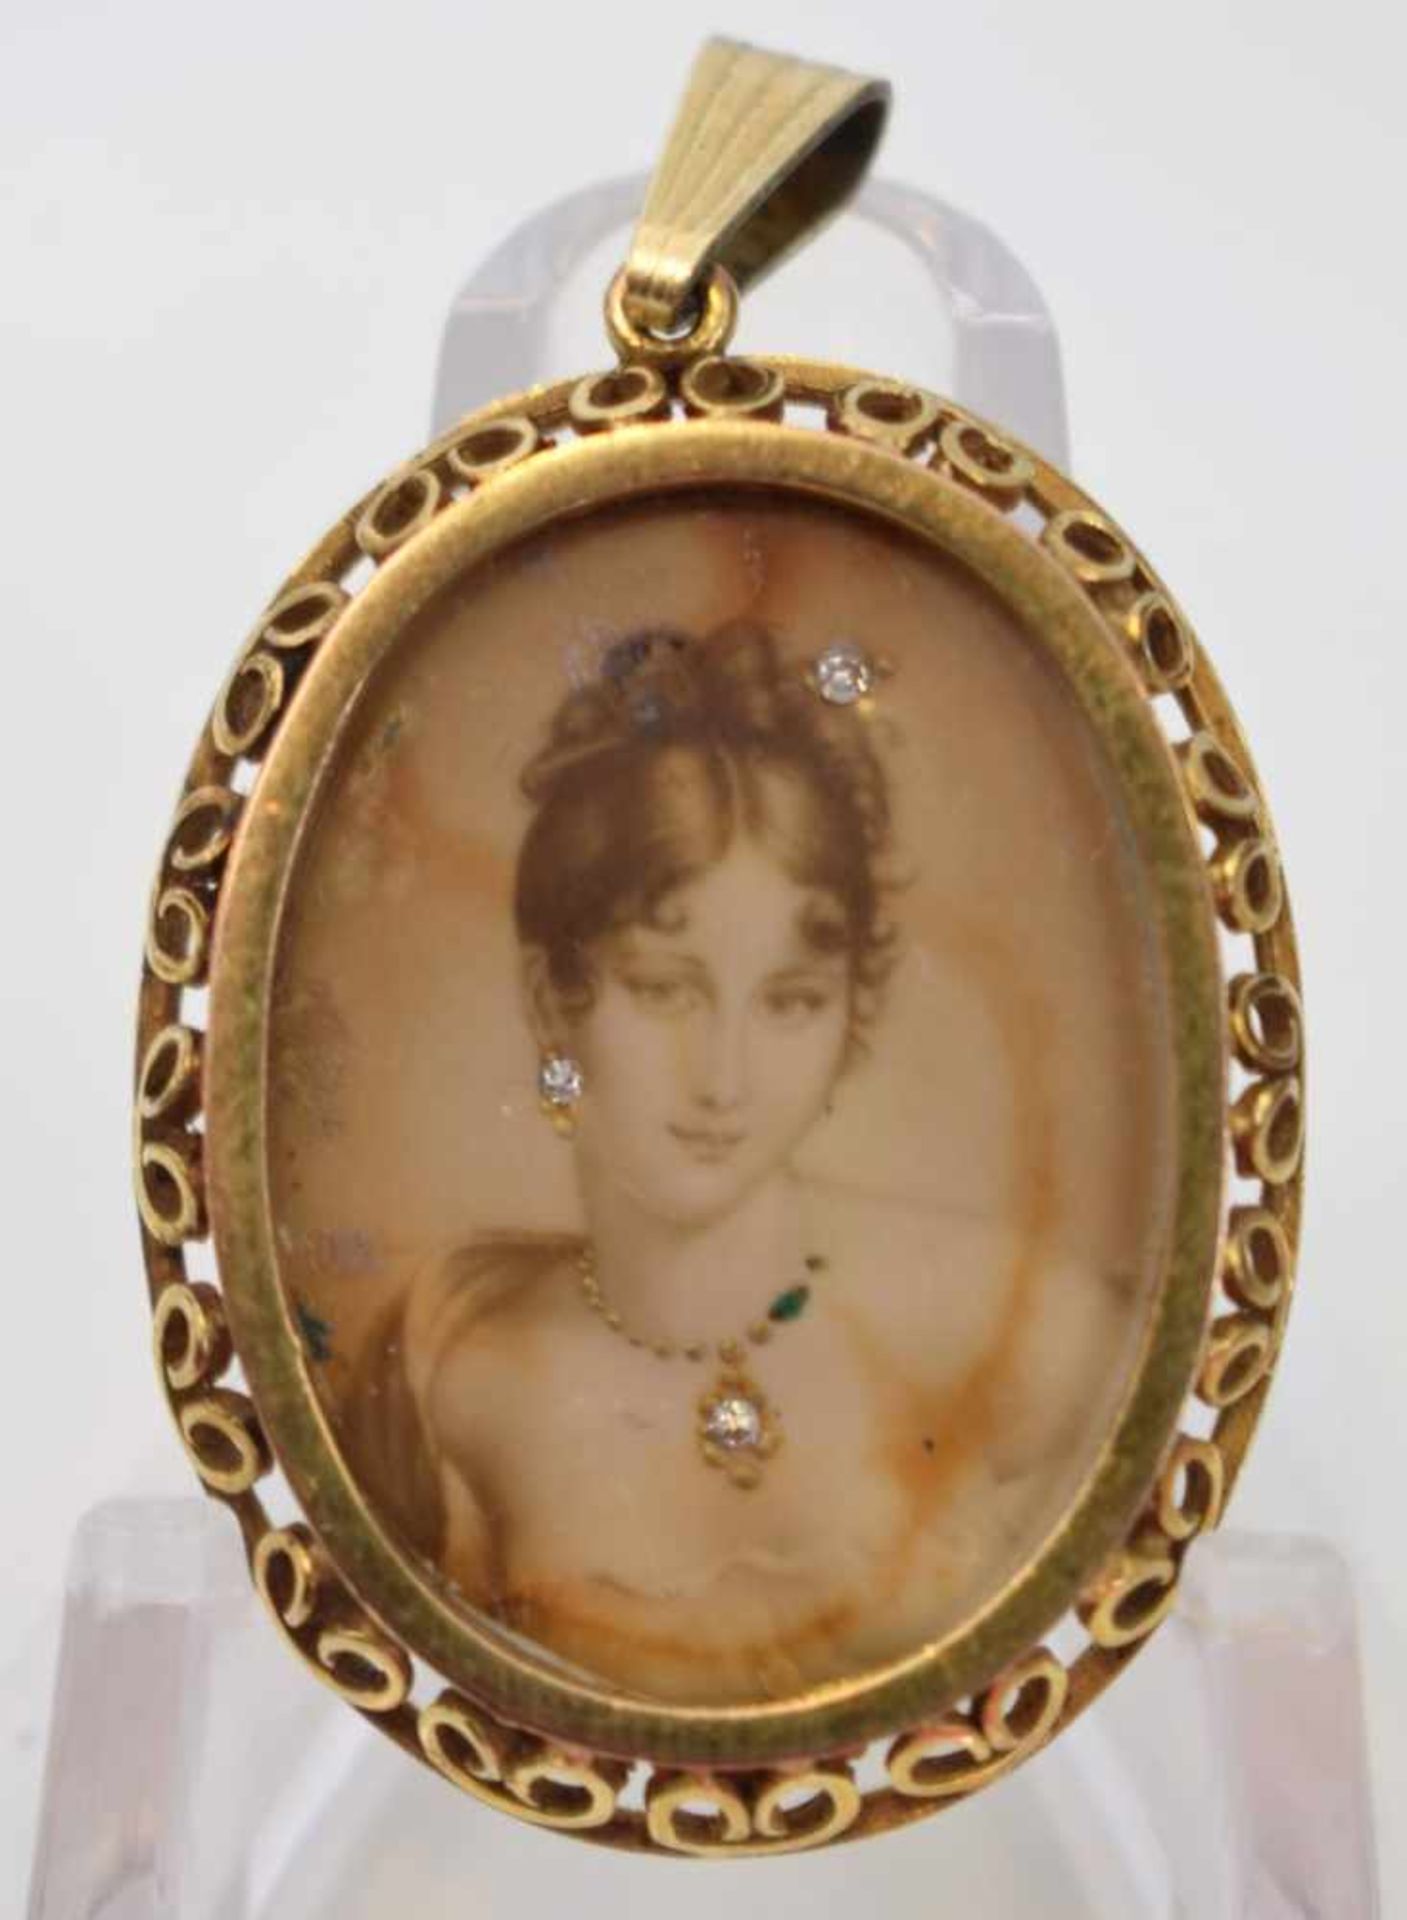 Medaillon14 kt. Gelbgold, durchbrochen verziert, mit Portrait einer jungen Frau, mit